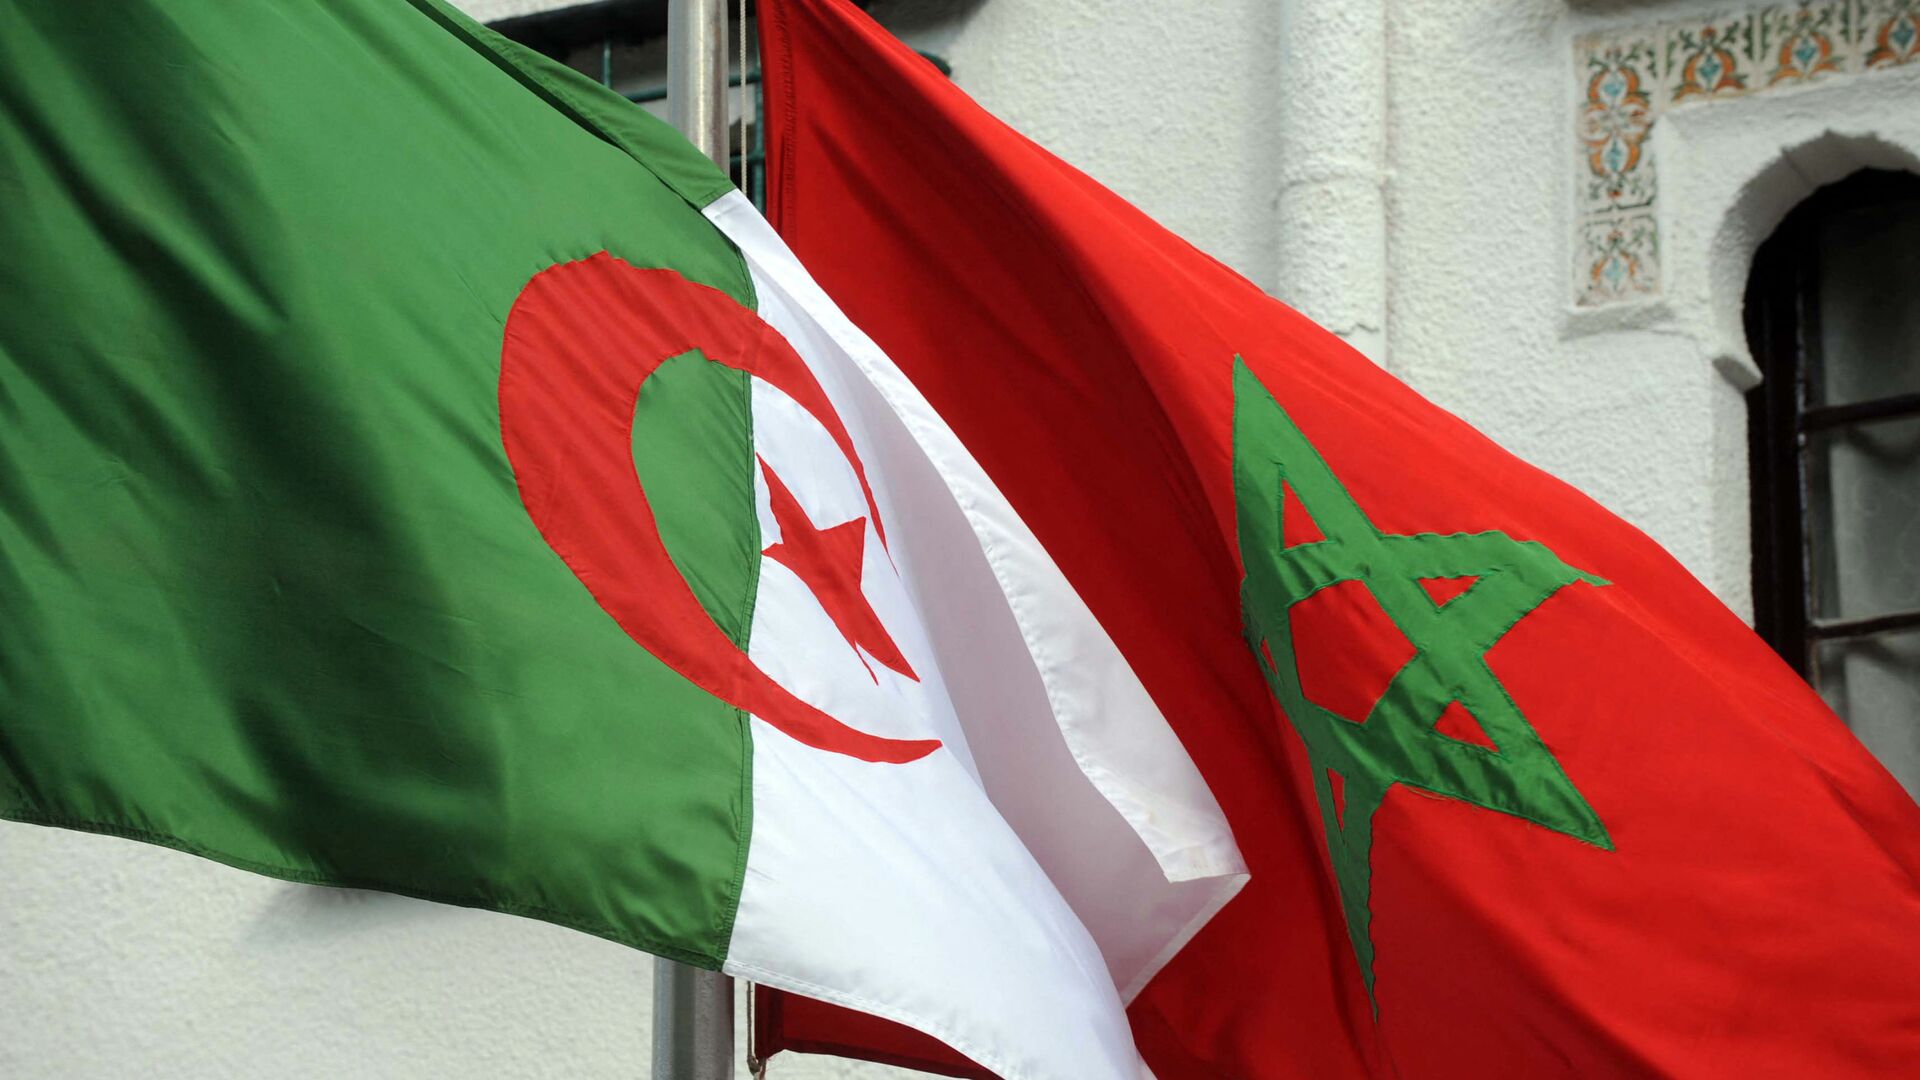 Drapeaux de l'Algérie et du Maroc - Sputnik Afrique, 1920, 04.09.2021